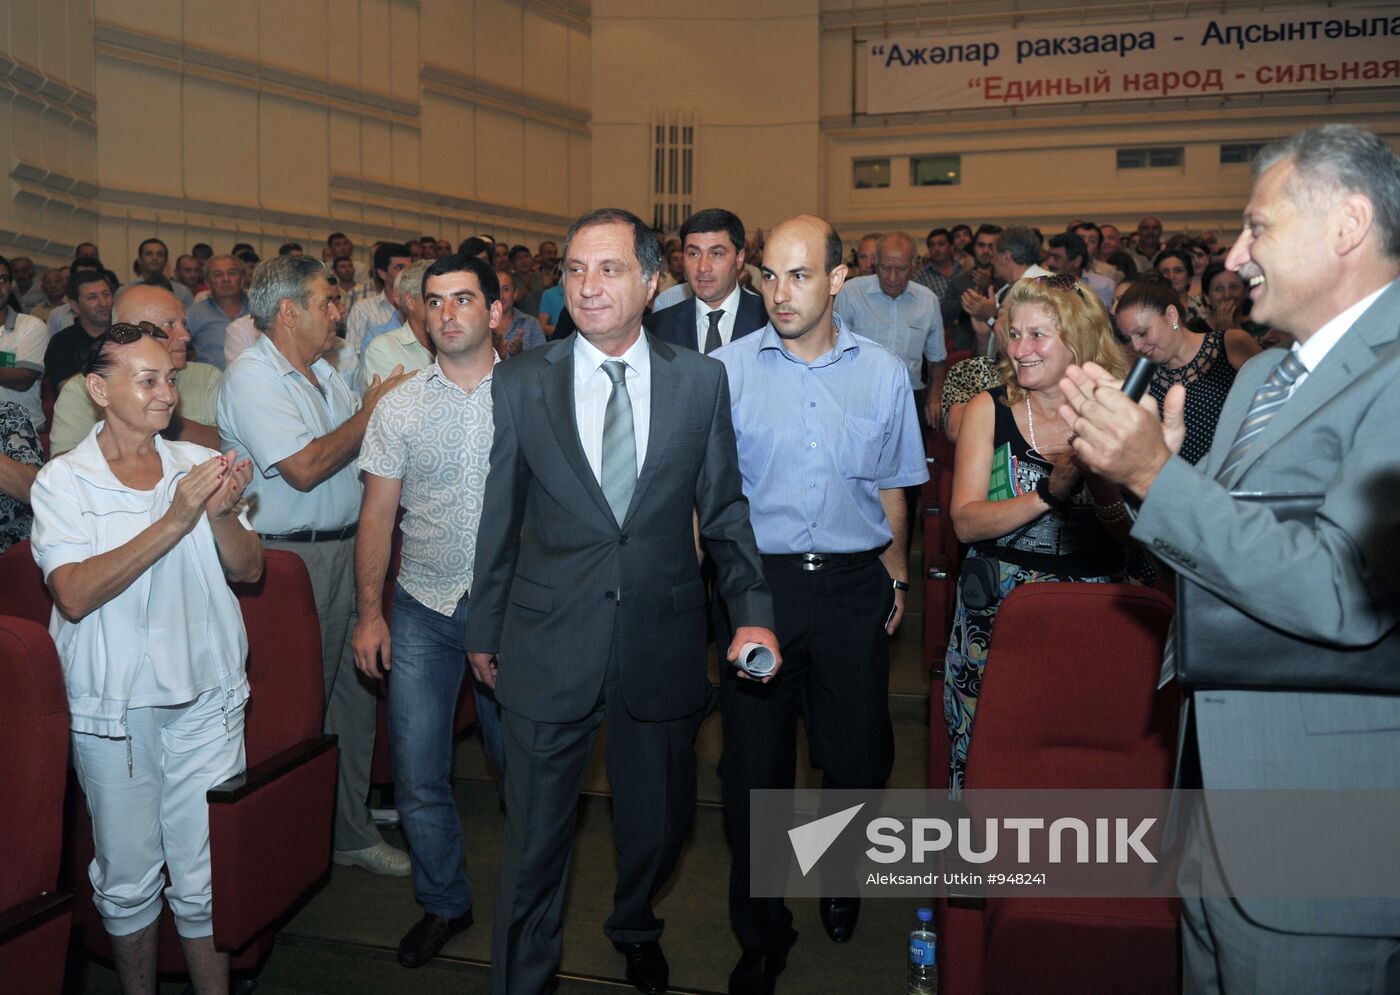 Sergei Shamba at Abkhazian People's Congress